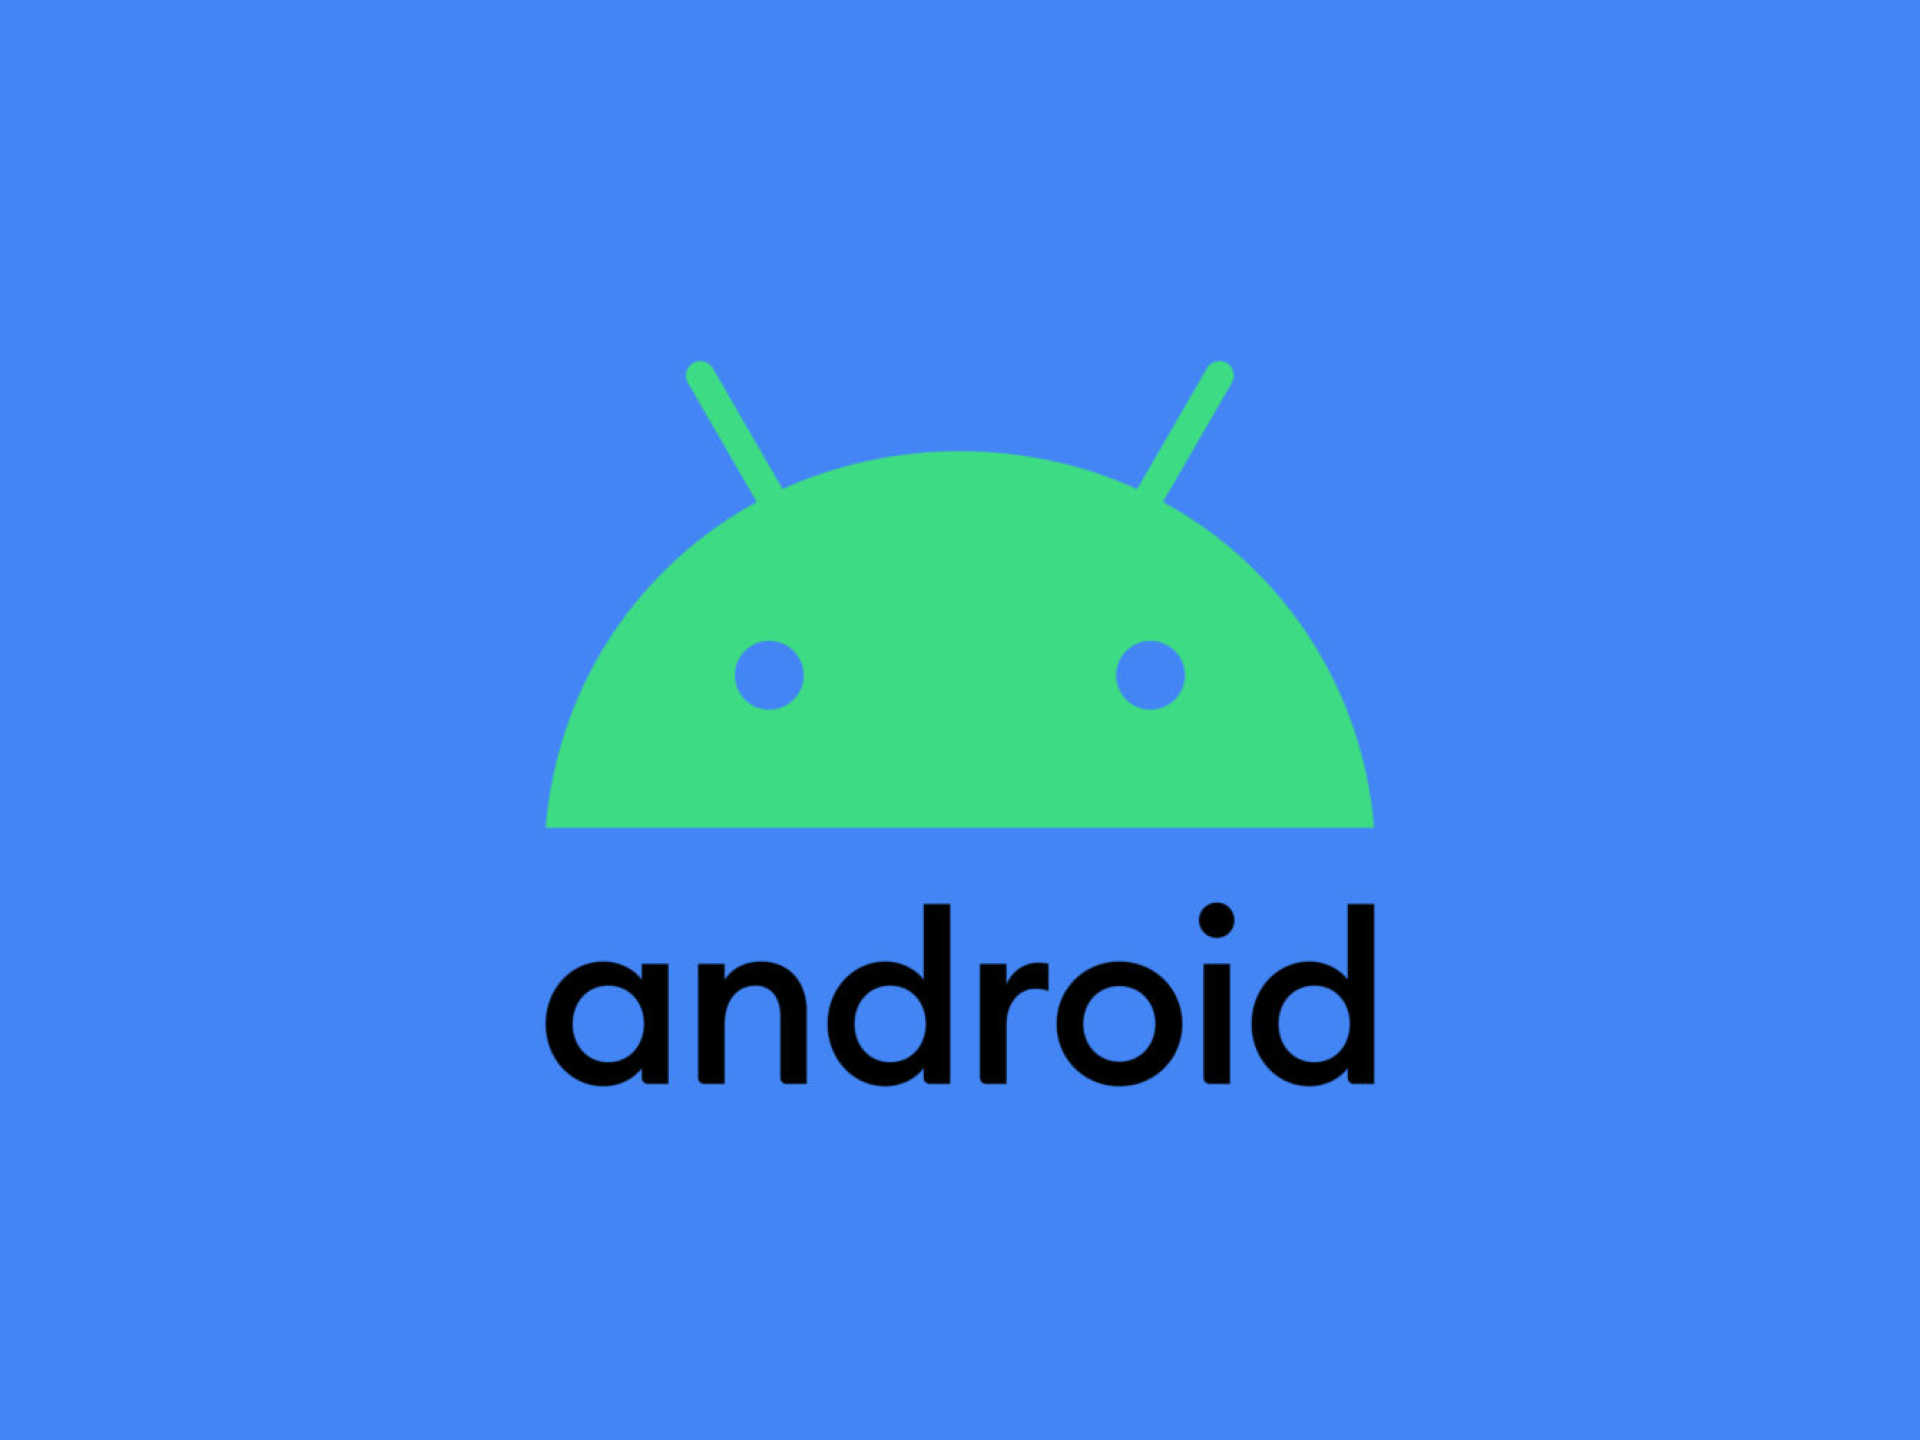 Come Avere uno Smartphone Android Sicuro - Oltre 30 Trucchi per la Sicurezza del tuo Telefono  --- (Fonte immagine: https://img.tuttoandroid.net/wp-content/uploads/2019/08/Android-nuovo-logo.png)